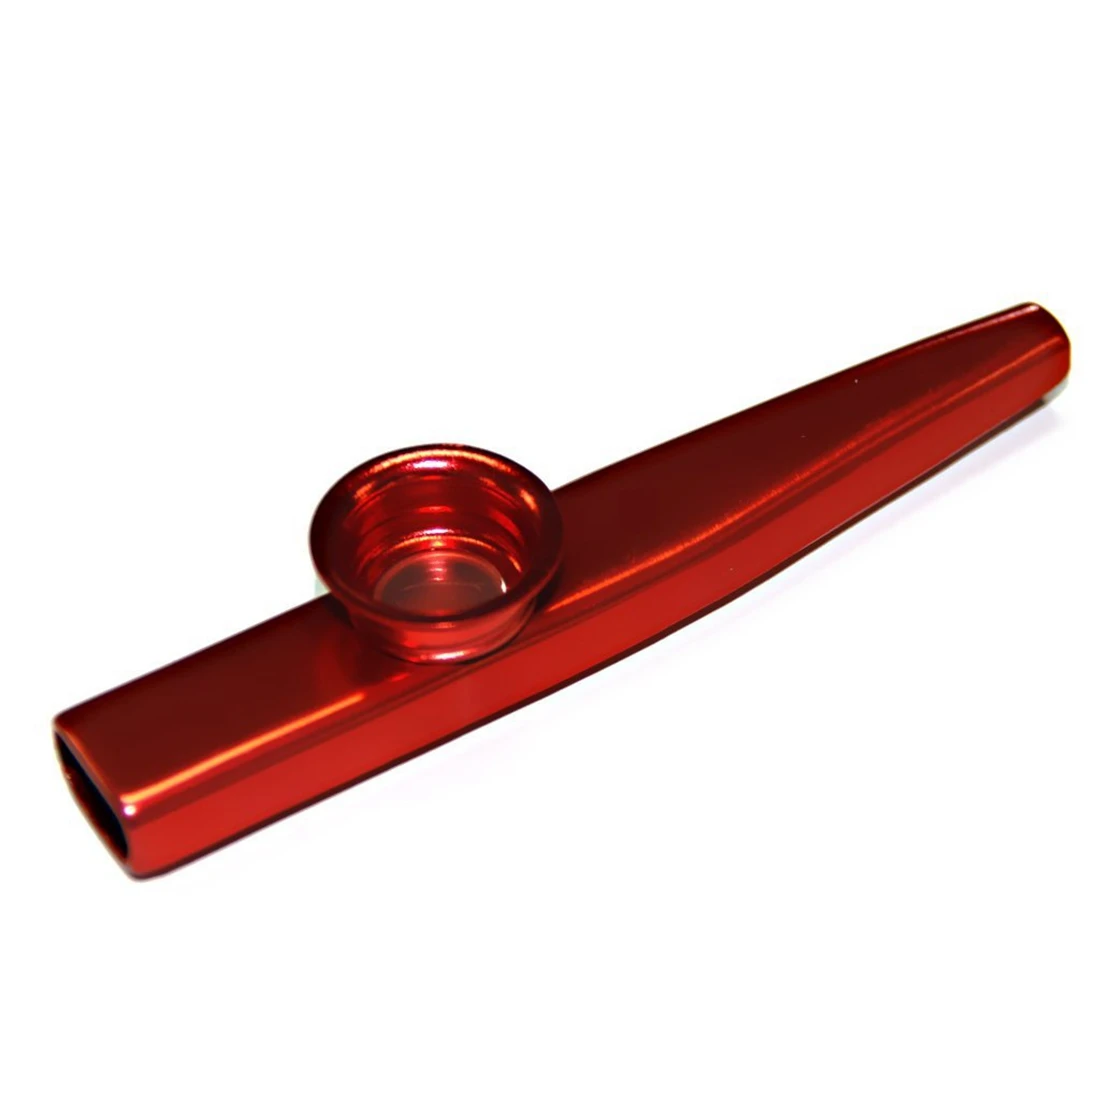 XFDZ-Mirliton изготовлен из алюминиевого сплава с красной мембраной